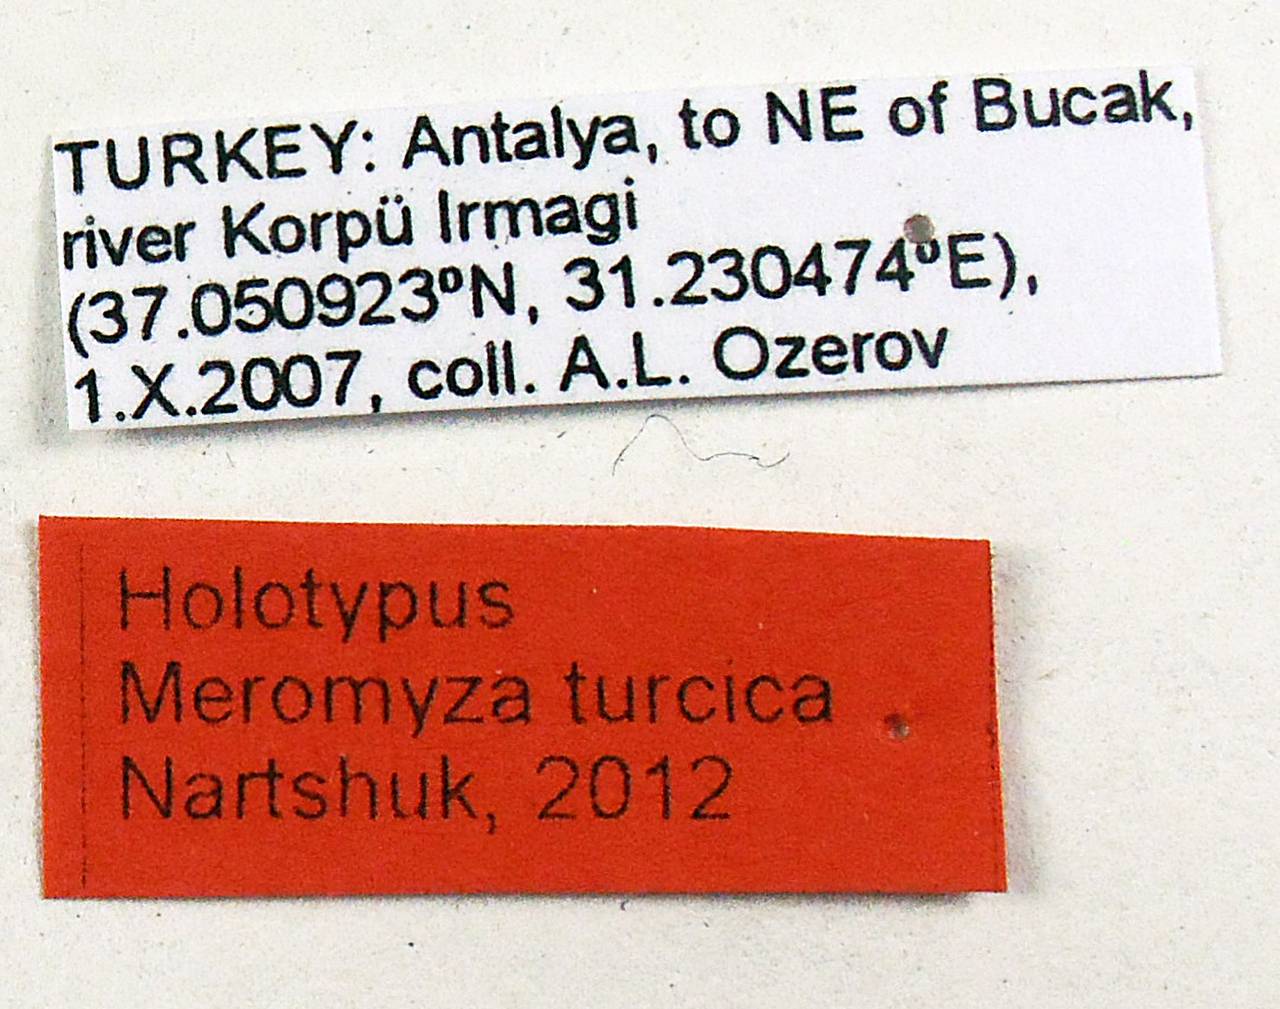 turcica_nartshuk_(meromyza), Antalya (Turkey)